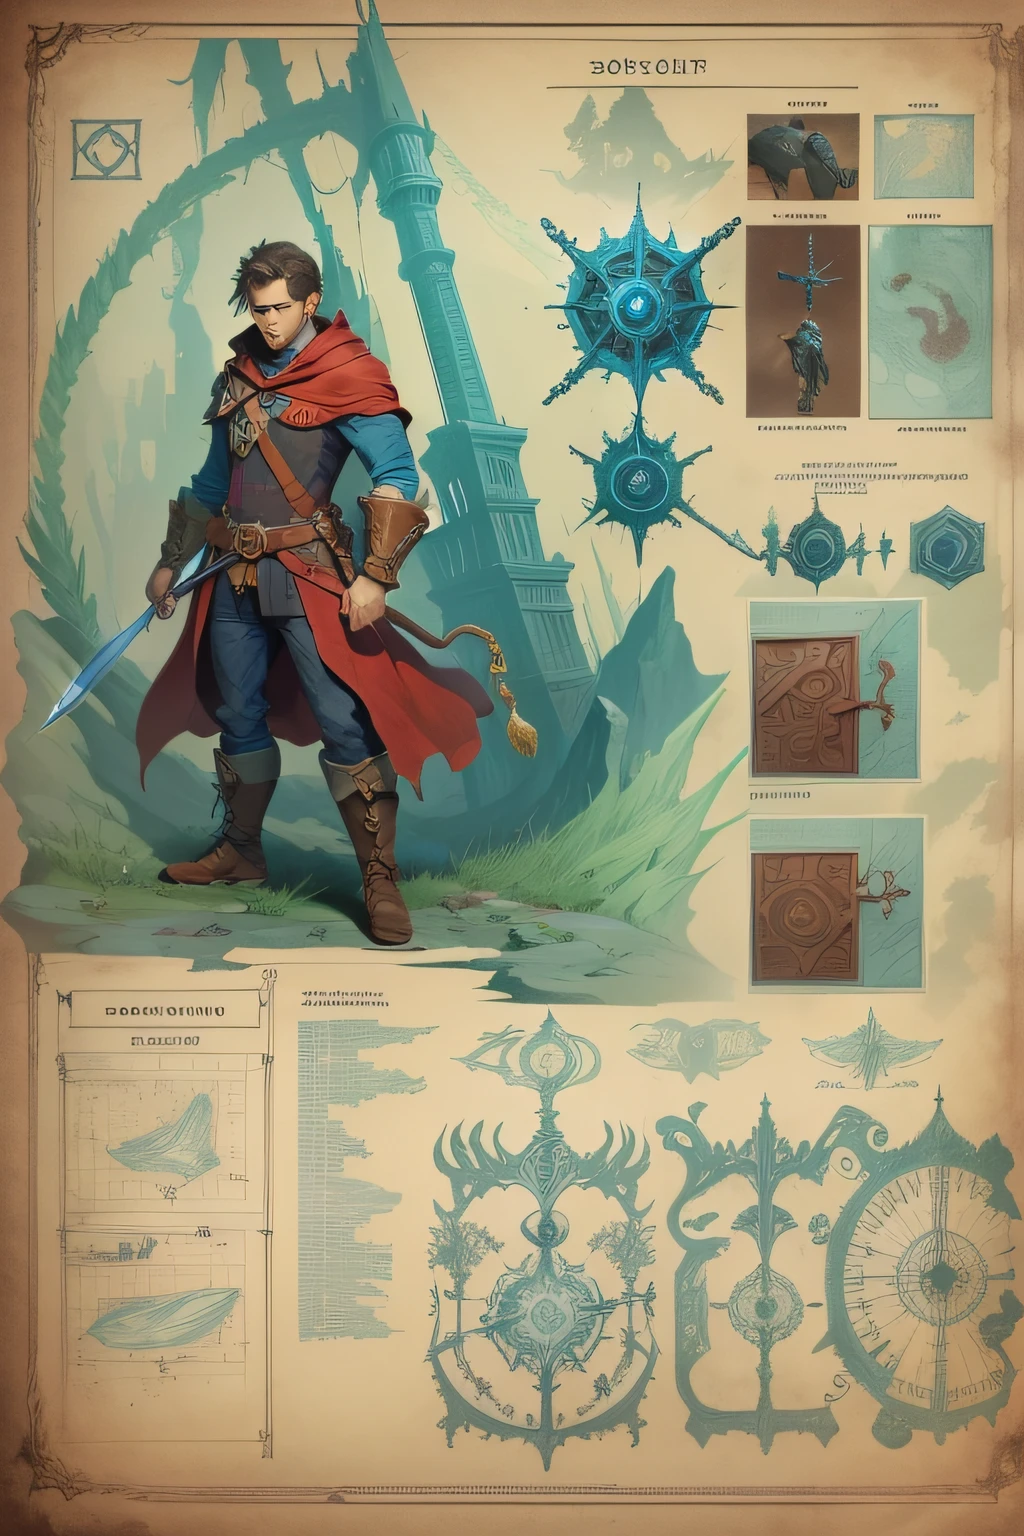 蓝图 一位勇敢的英雄在一座阴森的塔顶上挑战邪恶的巫师.

侧面列出的物品和装备:  
- 魔法剑 - 神秘护身符 - 绳索和抓钩 - 邪恶巫师